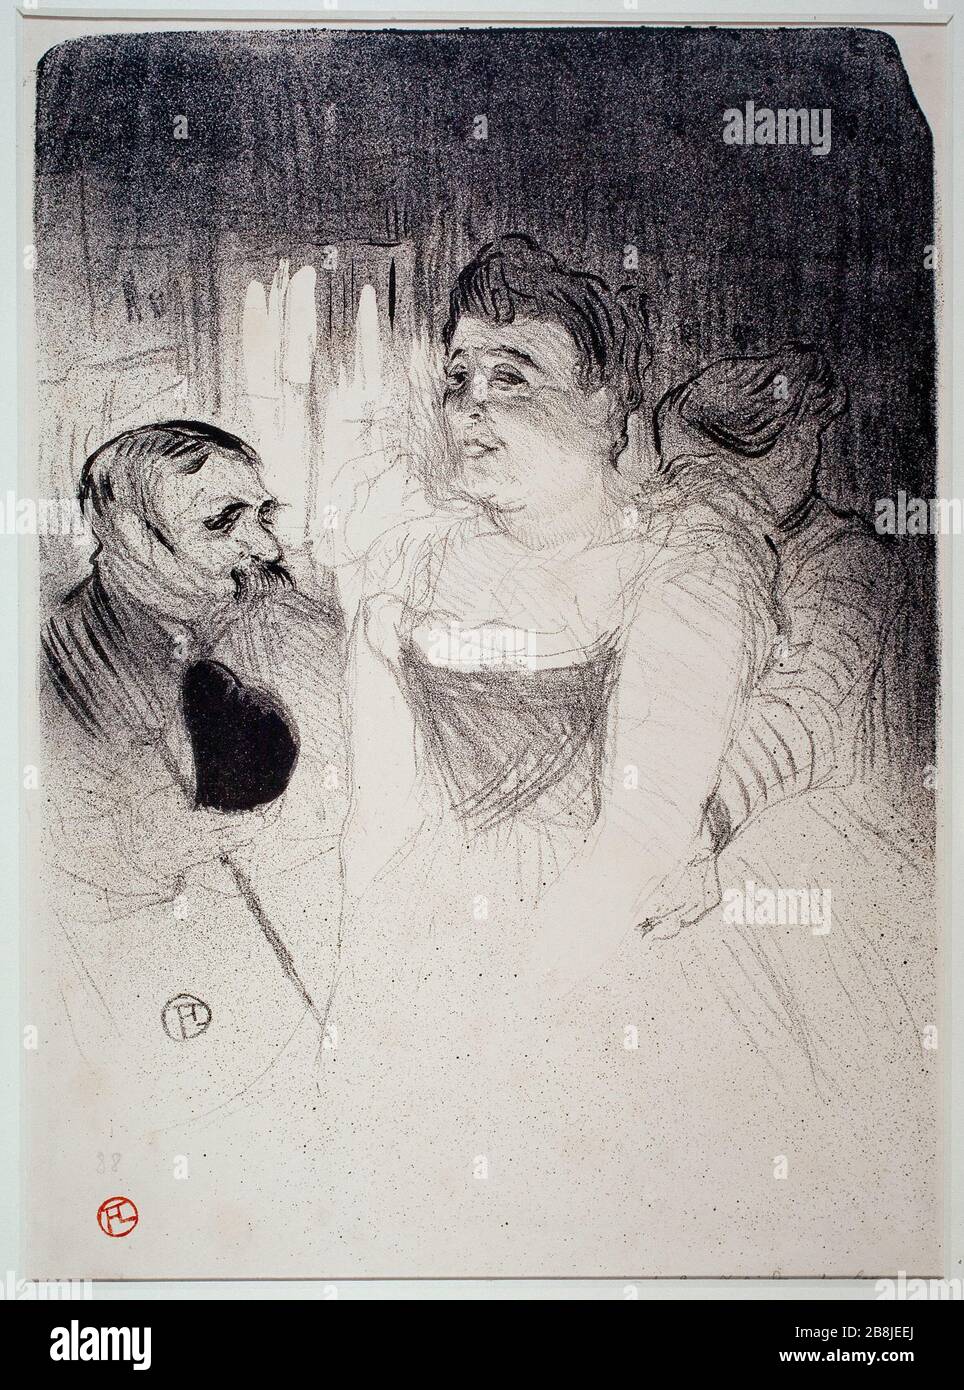 ANNA JUDIC IN HIS DRESSING Henri de Toulouse-Lautrec (1864-1901). 'Anna Judic dans sa loge'. Lithographie. Musée des Beaux-arts de la Ville de Paris, Petit Palais. Stock Photo